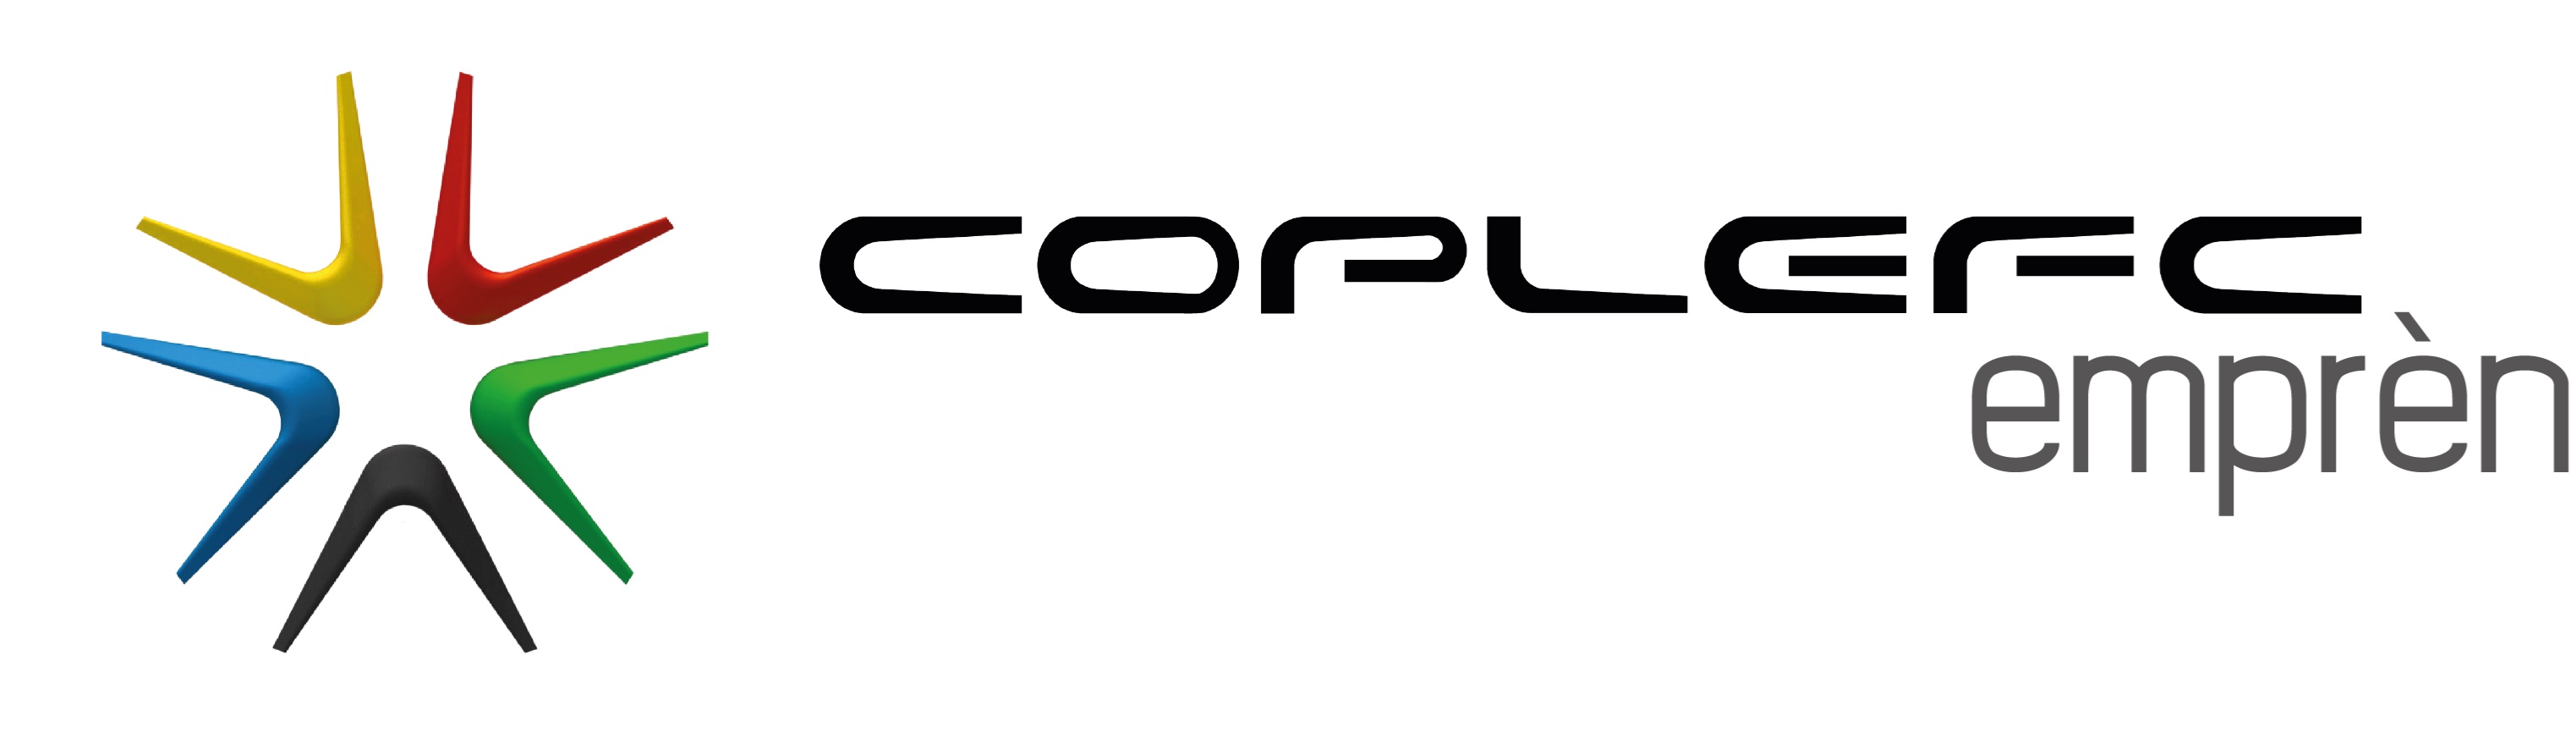 logo coplefc empren baselin.jpg (132 KB)